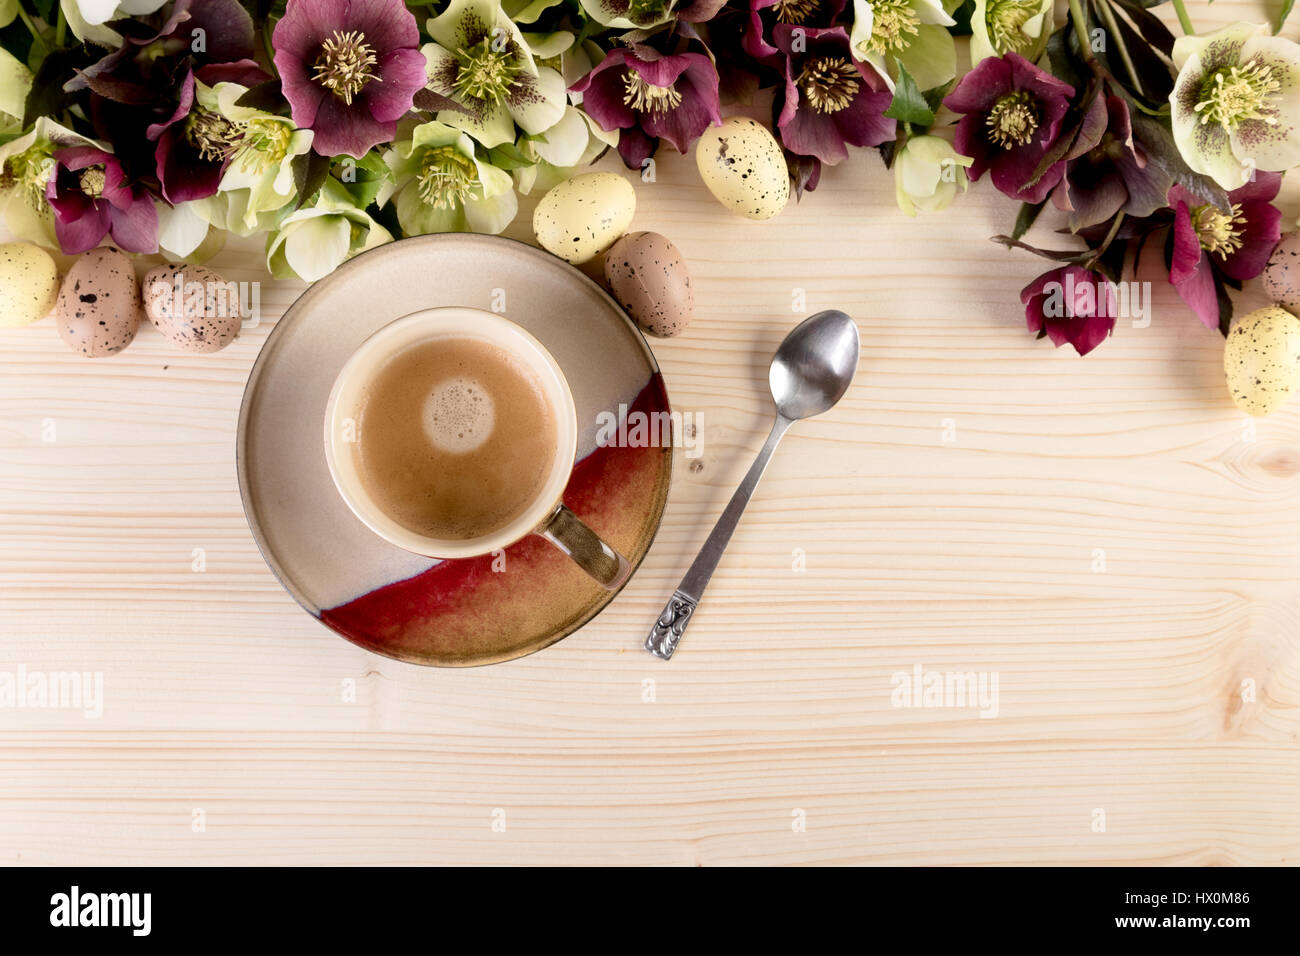 Concept café oeufs de Pâques avec des fleurs de printemps au-dessus du bois. Vue de dessus, copiez l'espace. Banque D'Images